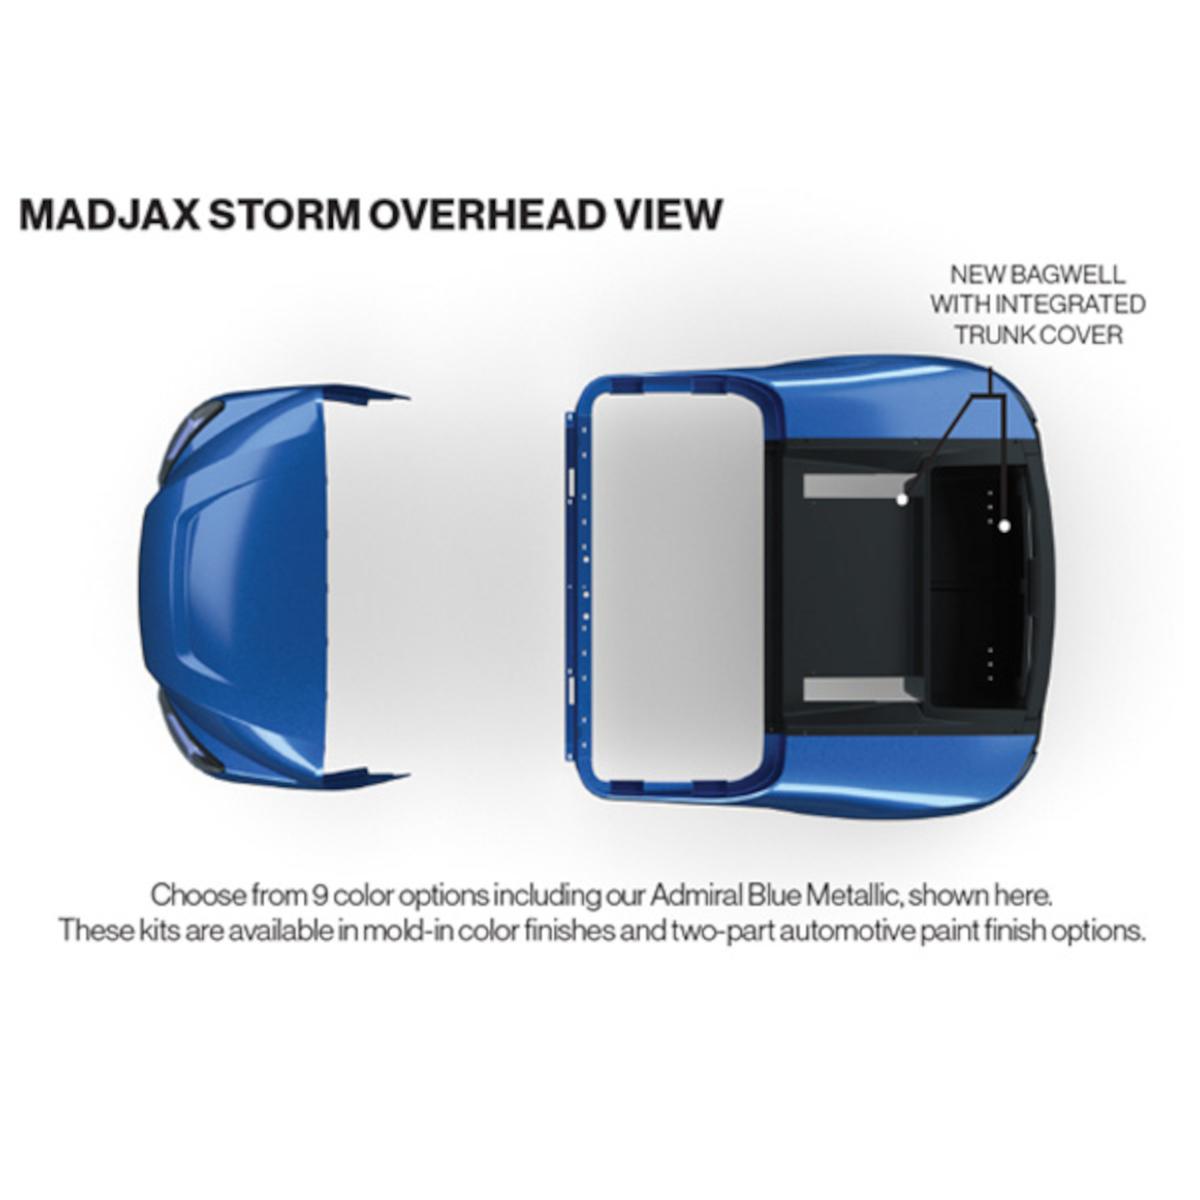 MadJax&reg; Storm Body Kit for EZGO TXT – Sea Storm